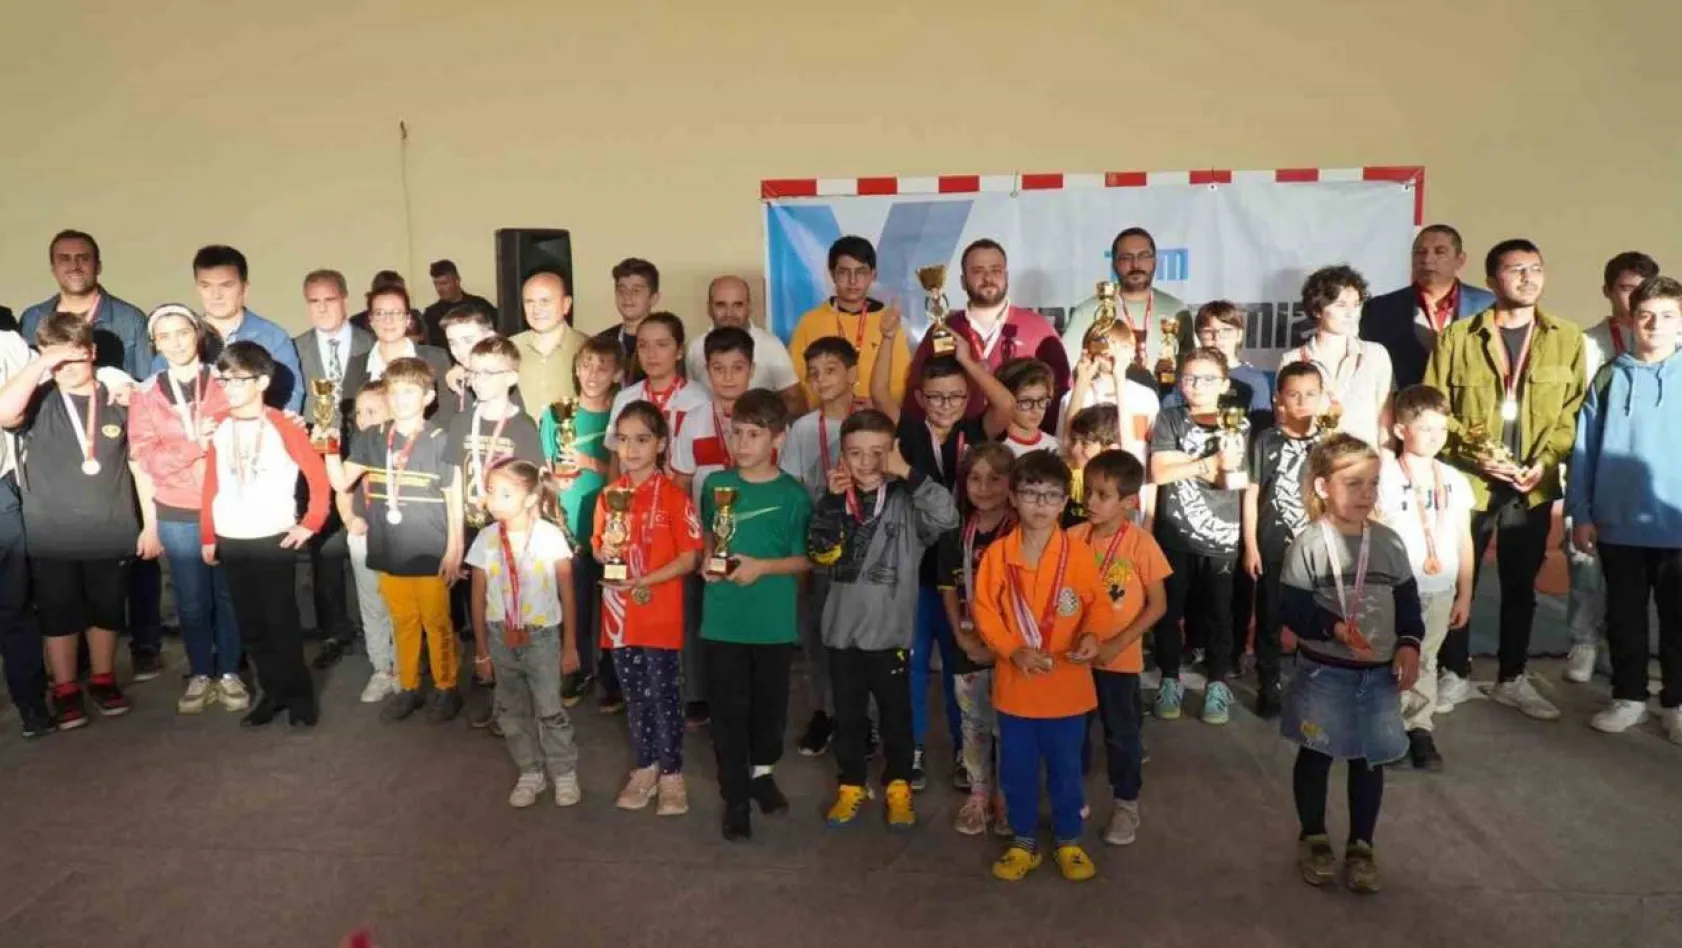 Satrancın şampiyonları Altınova'da belli oldu